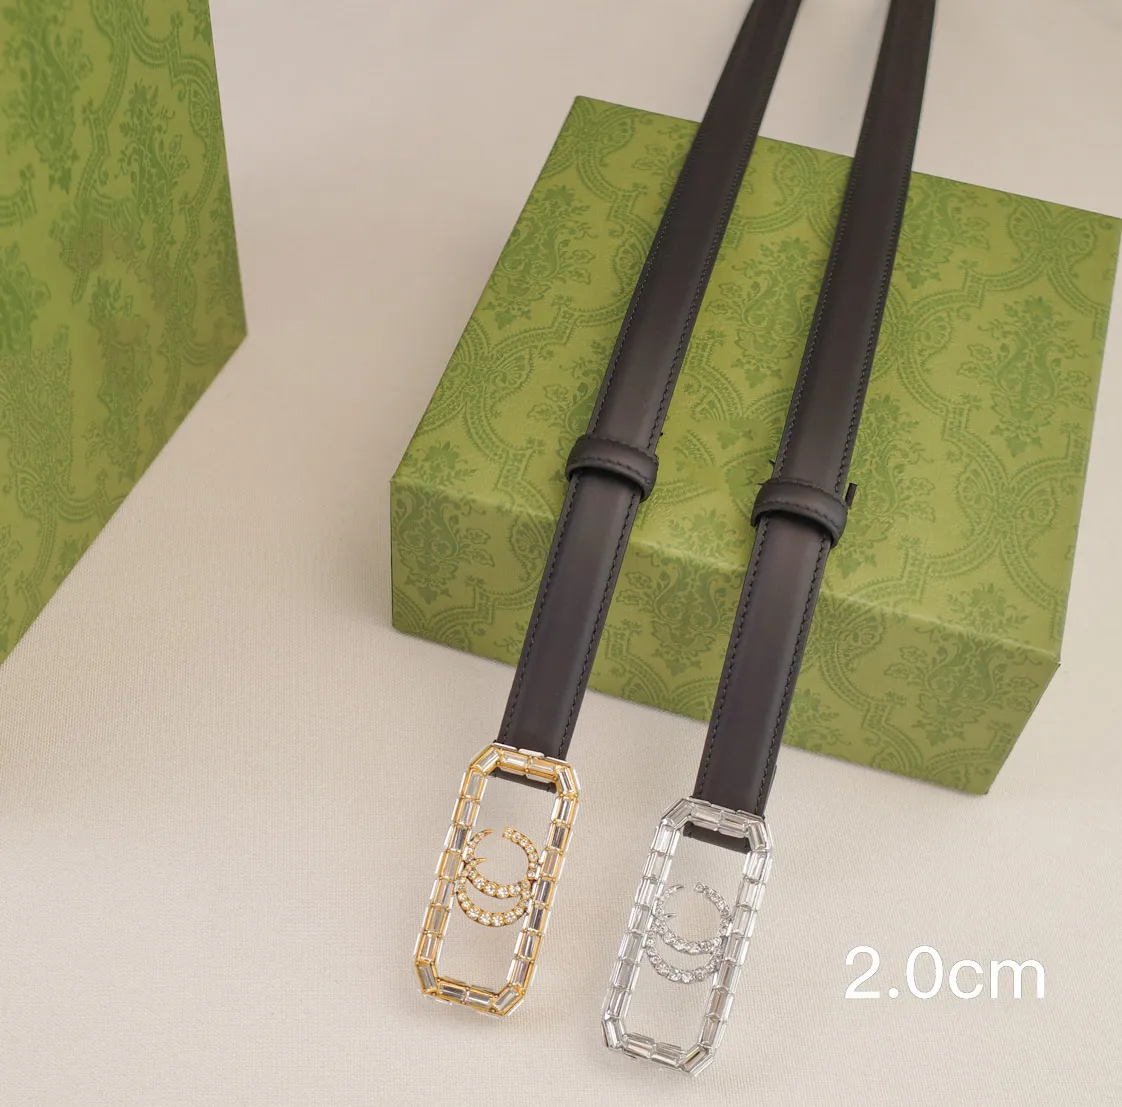 Orijinal Deri Kemer Kadın Tasarımcı Kemerleri Genişlik 2.0cm Üst Moda Elmas Mektubu G Gümüş Altın Tokalı Lüks İnce Kemer Ceinture Luxe Bel Bandı Cintura